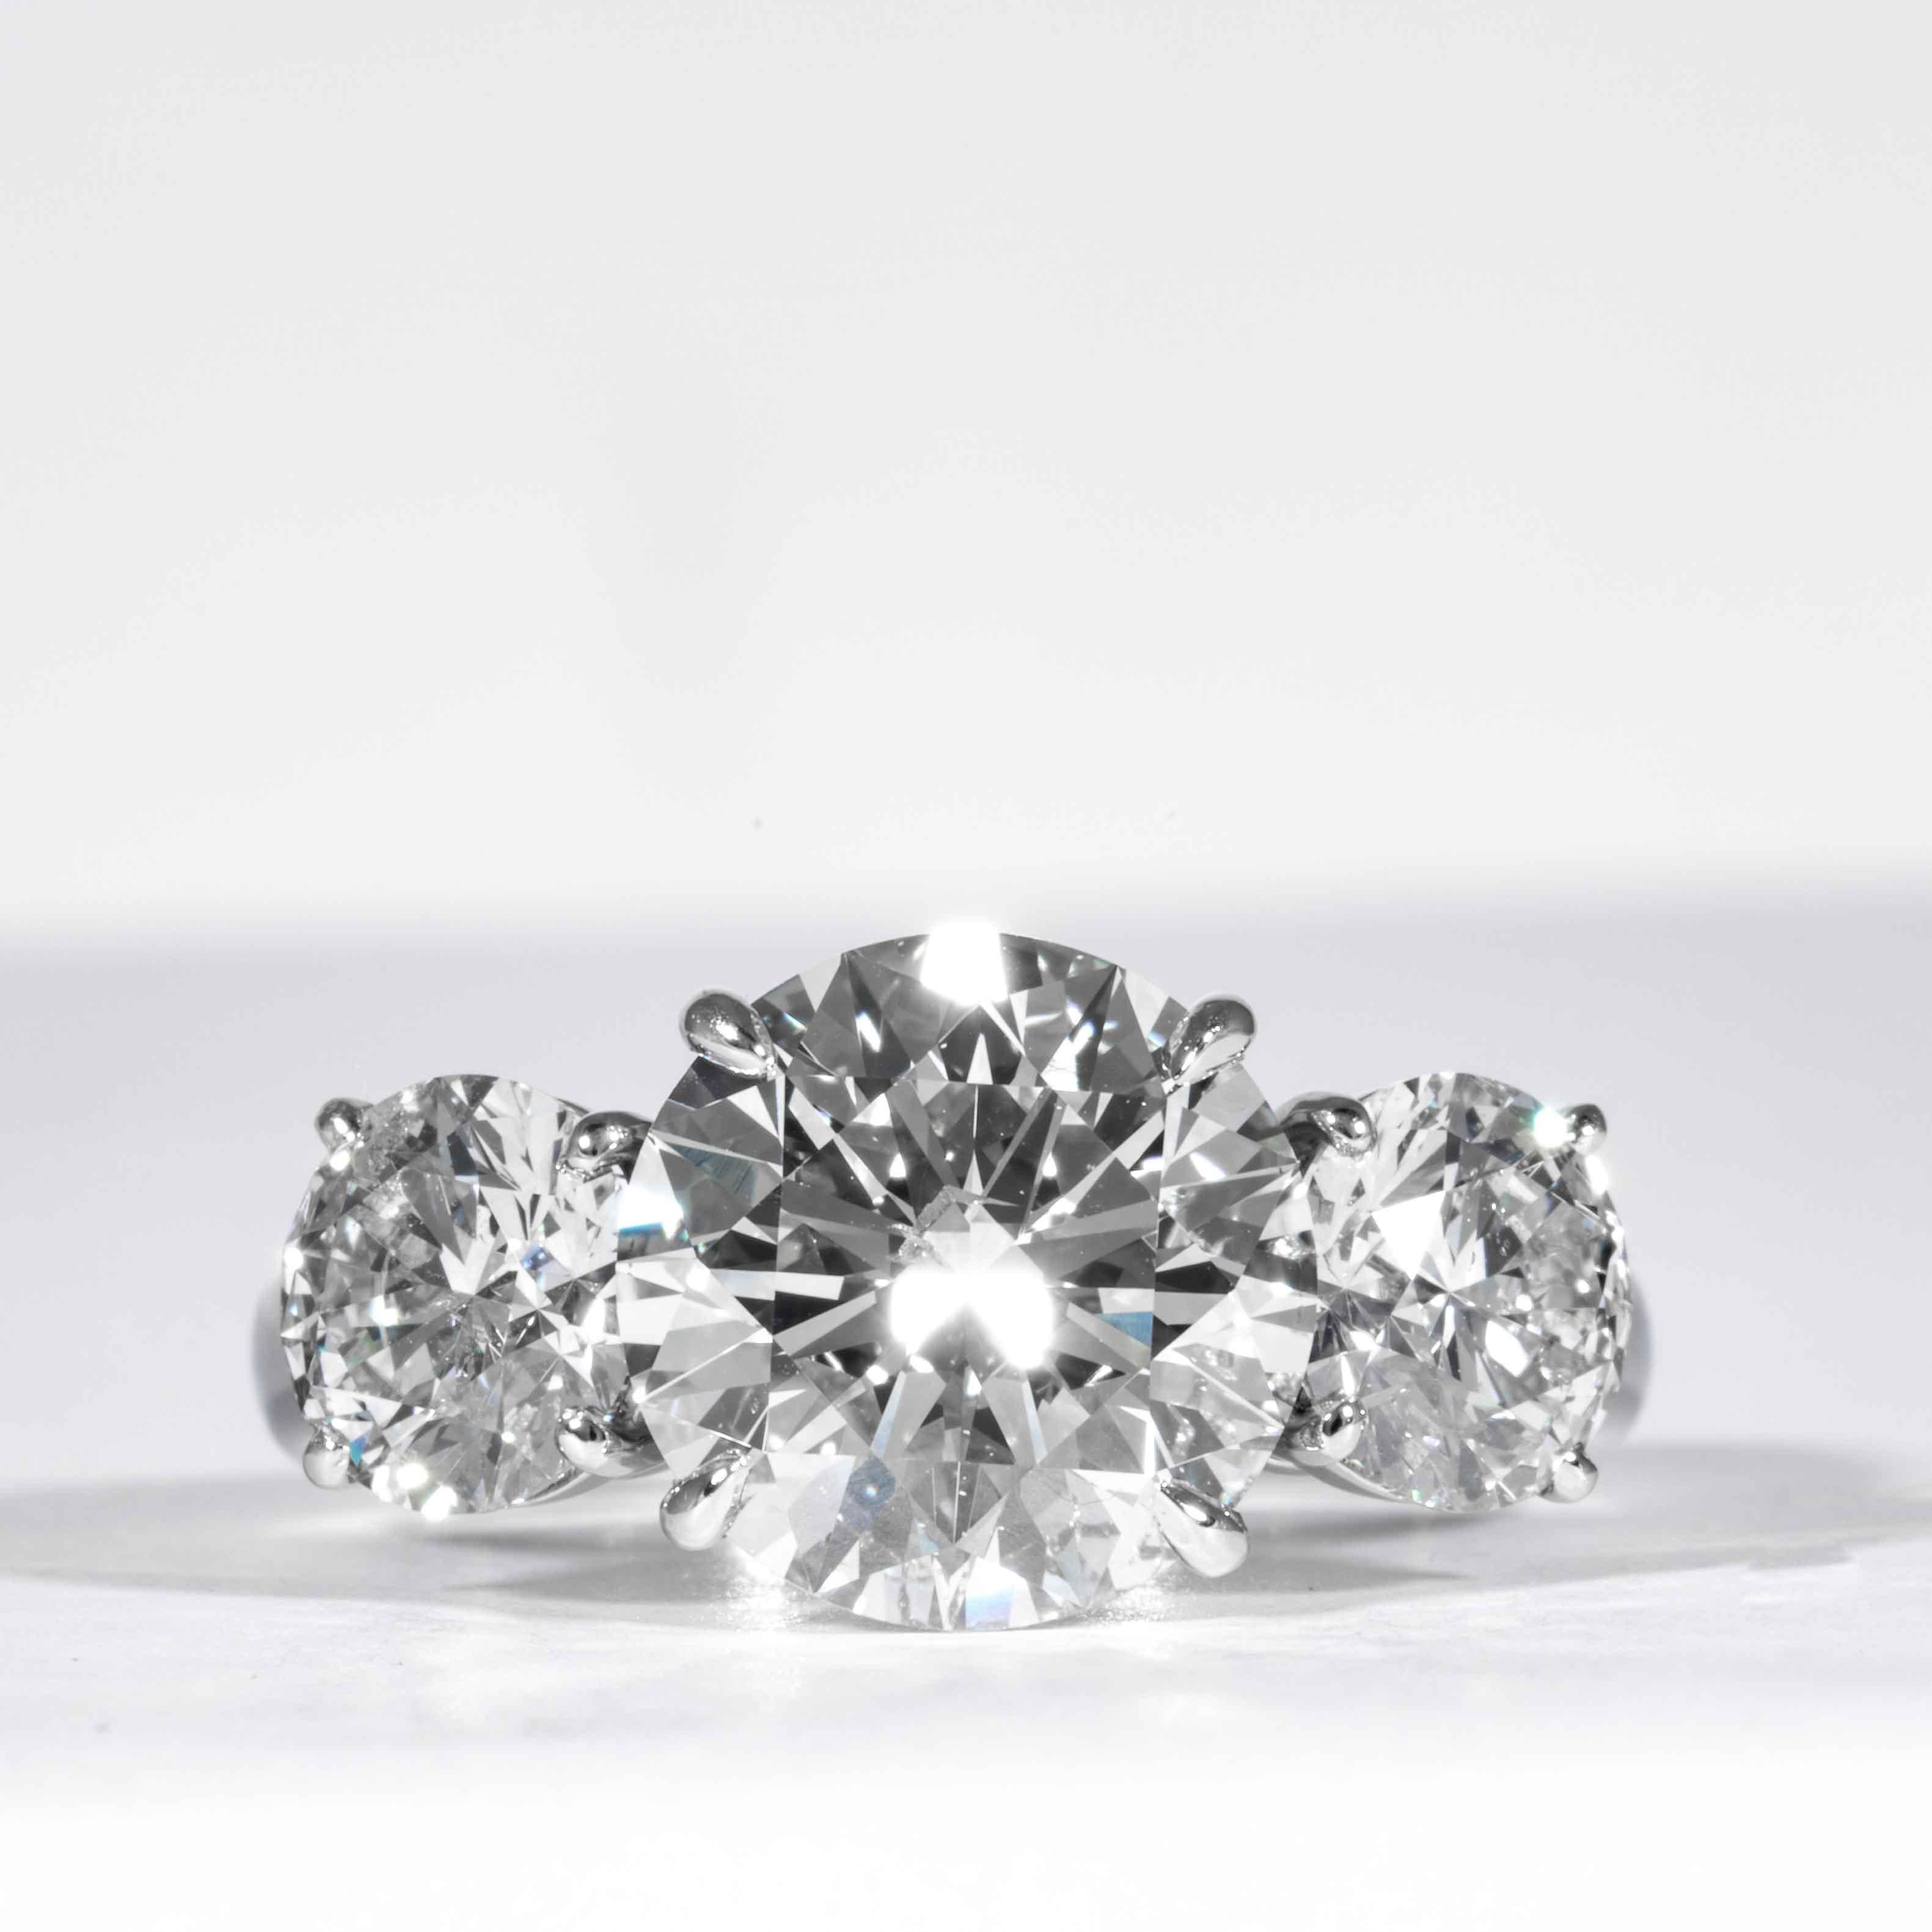 Dieser elegante und klassische Diamantring wird von Shreve, Crump & Low angeboten. Dieser 3,99 Karat GIA-zertifizierte J SI1 runde Diamant im Brillantschliff mit den Maßen 10,17 - 10,20 x 6,25 mm ist in einem handgefertigten 3-Stein-Ring aus Platin